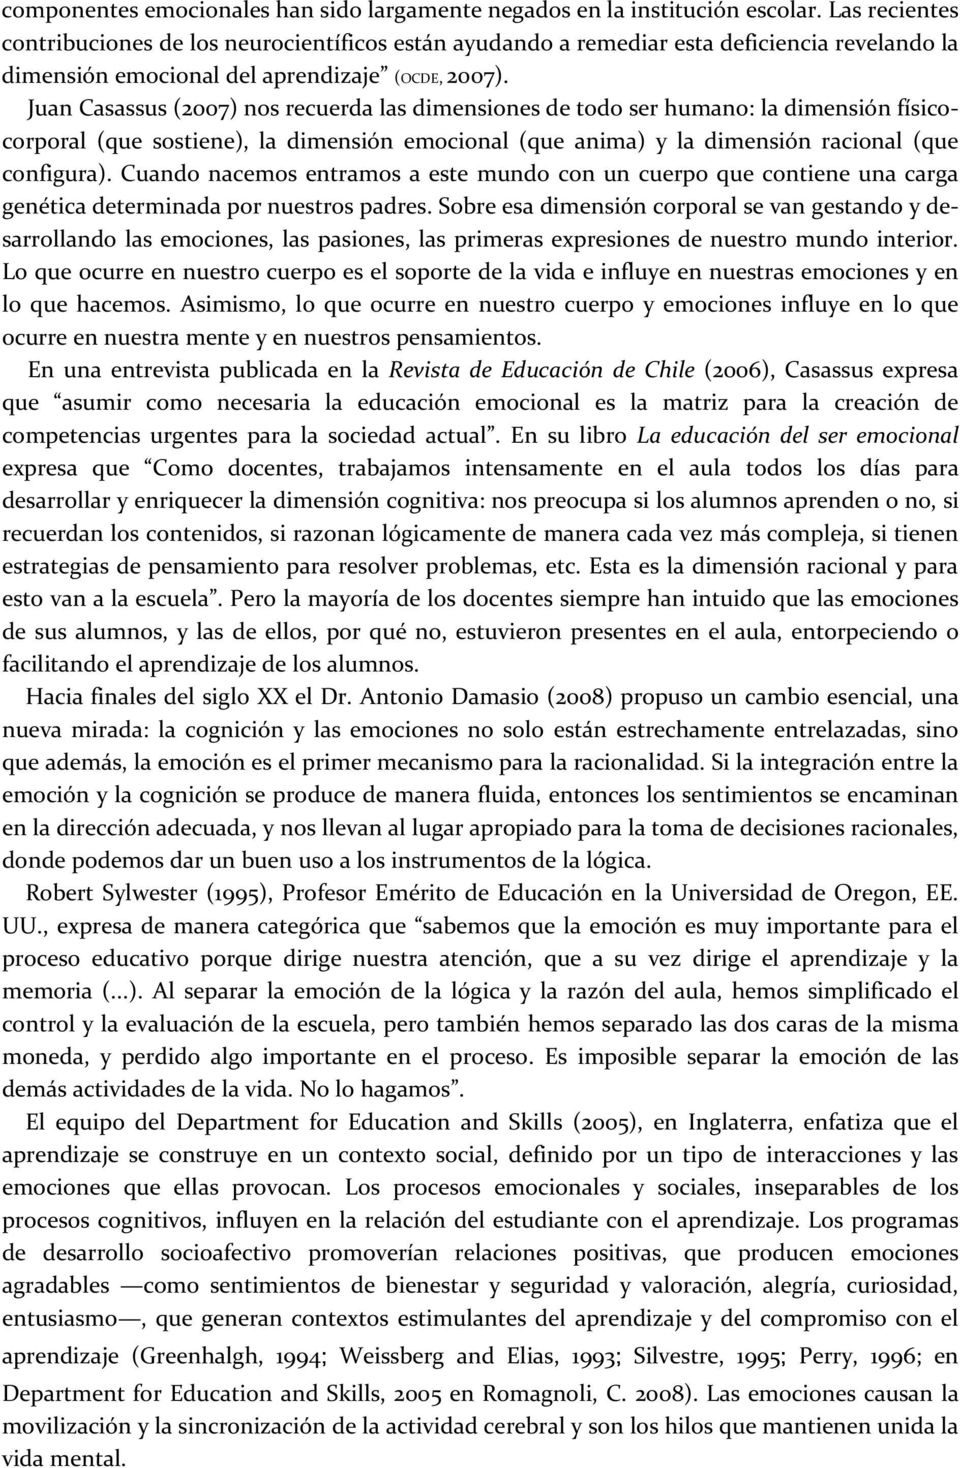 Juan Casassus (2007) nos recuerda las dimensiones de todo ser humano: la dimensión físicocorporal (que sostiene), la dimensión emocional (que anima) y la dimensión racional (que configura).